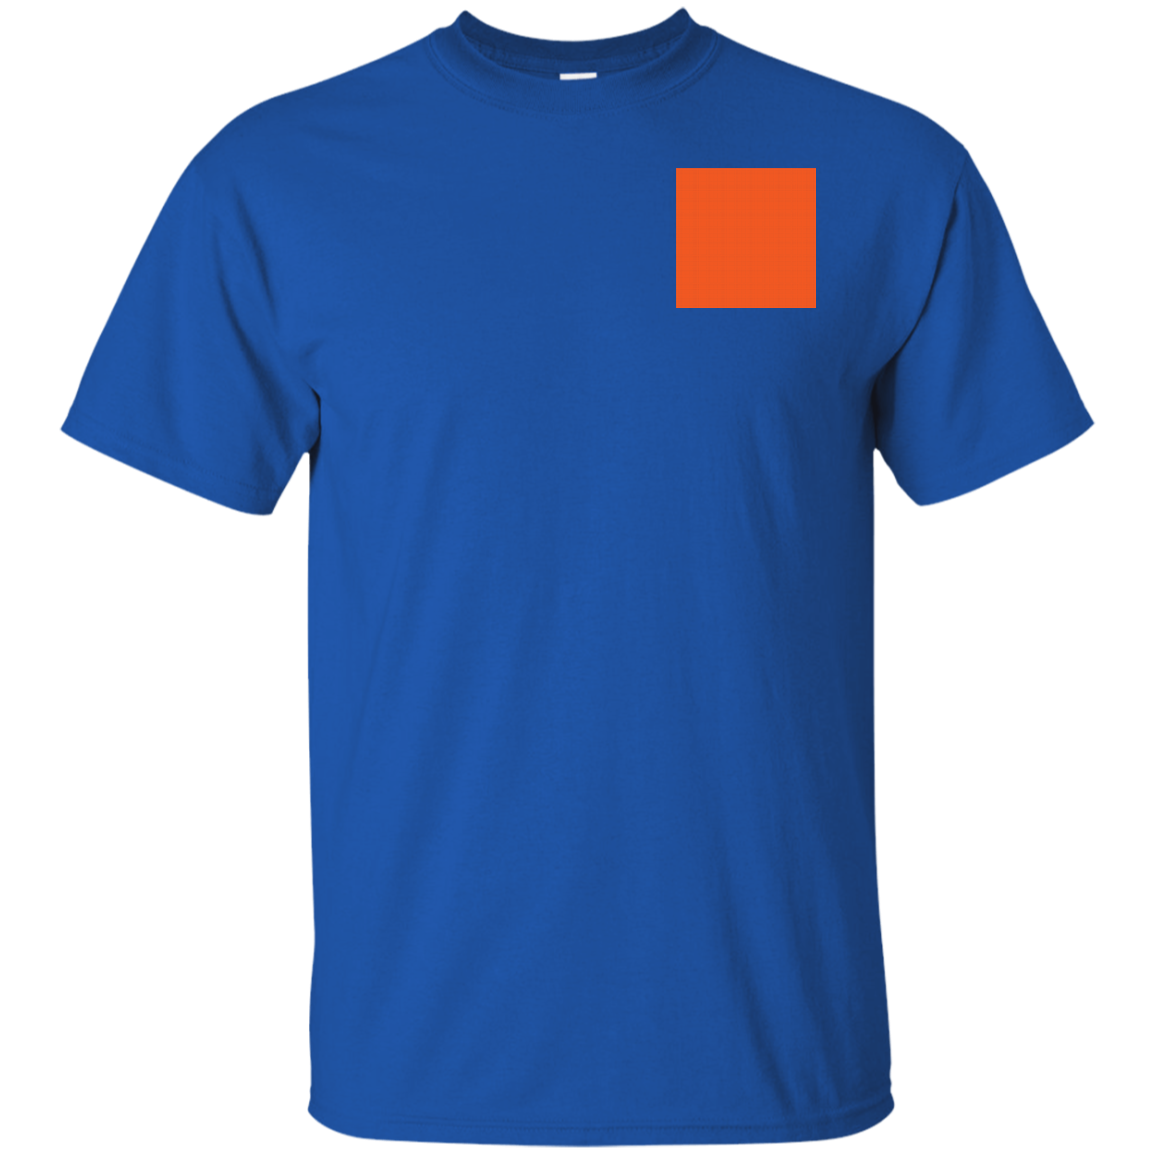 Left Chest Orange Gildan T-Shirt